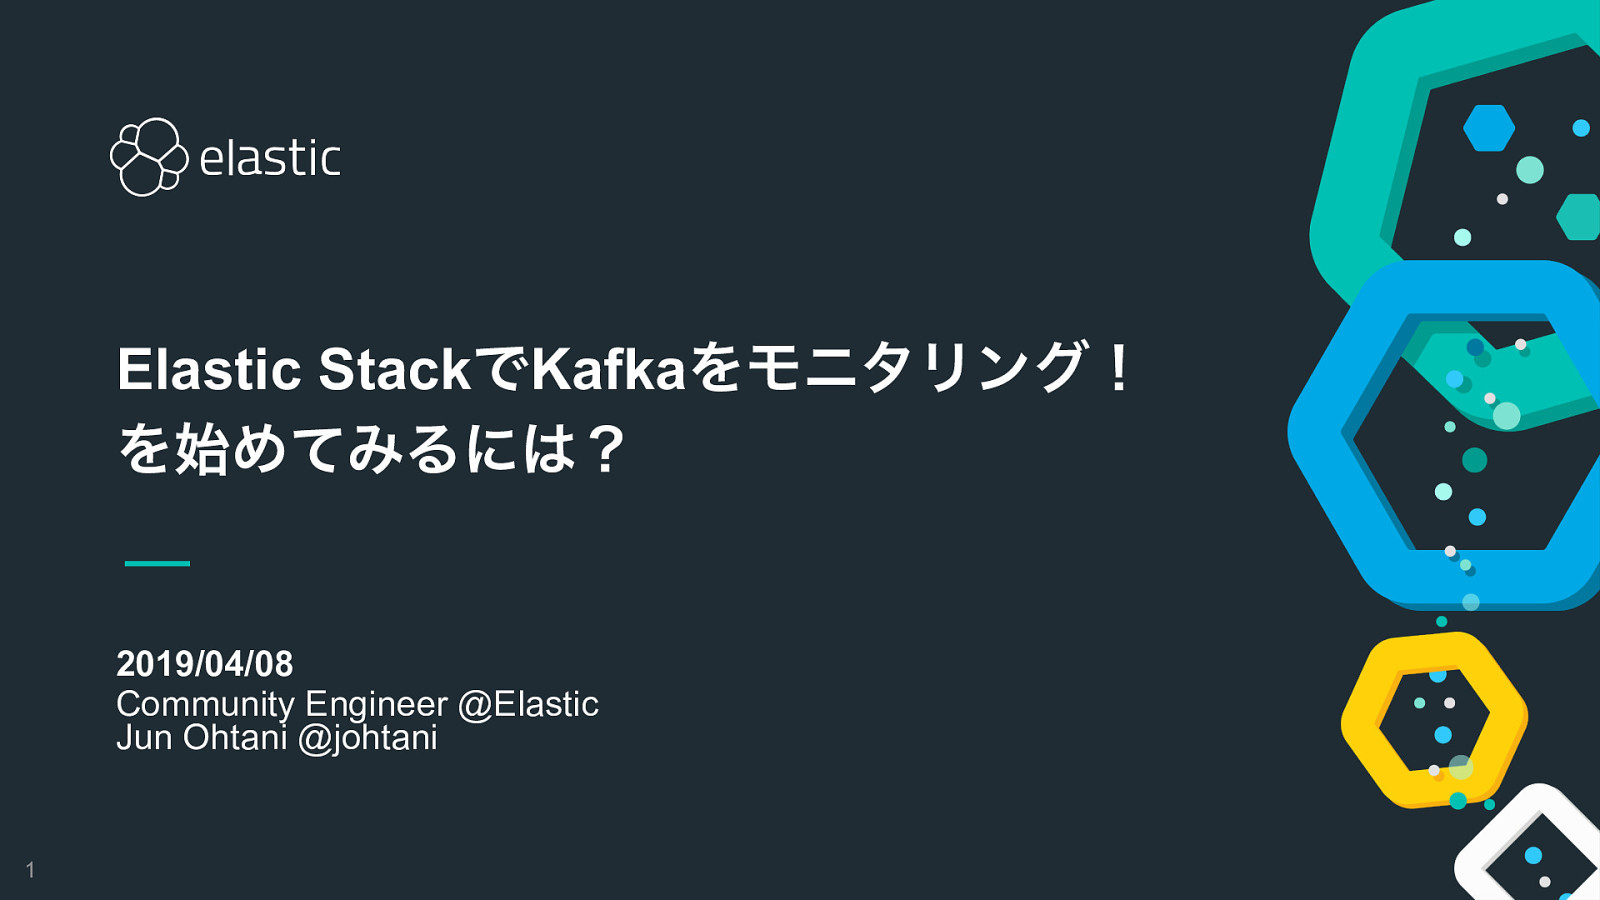 Elastic StackでKafkaをモニタリング！ を始めてみるには？